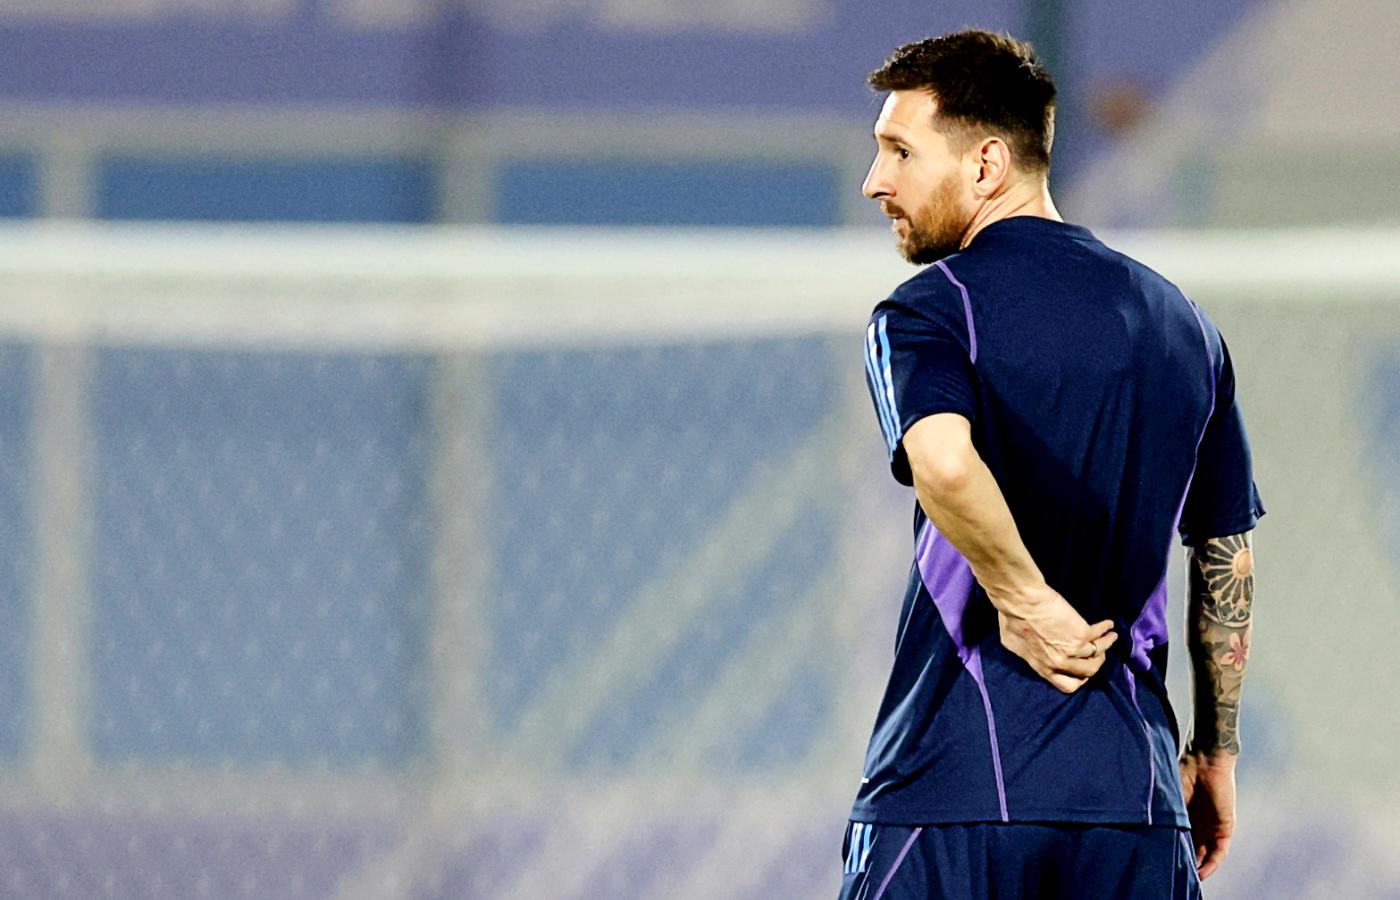 Katar 2022. Najwybitniejszy piłkarz w reprezentacji Argentyny Leo Messi na jednym z ostatnich treningów przed meczem z Polską. 29 listopada 2022 r.